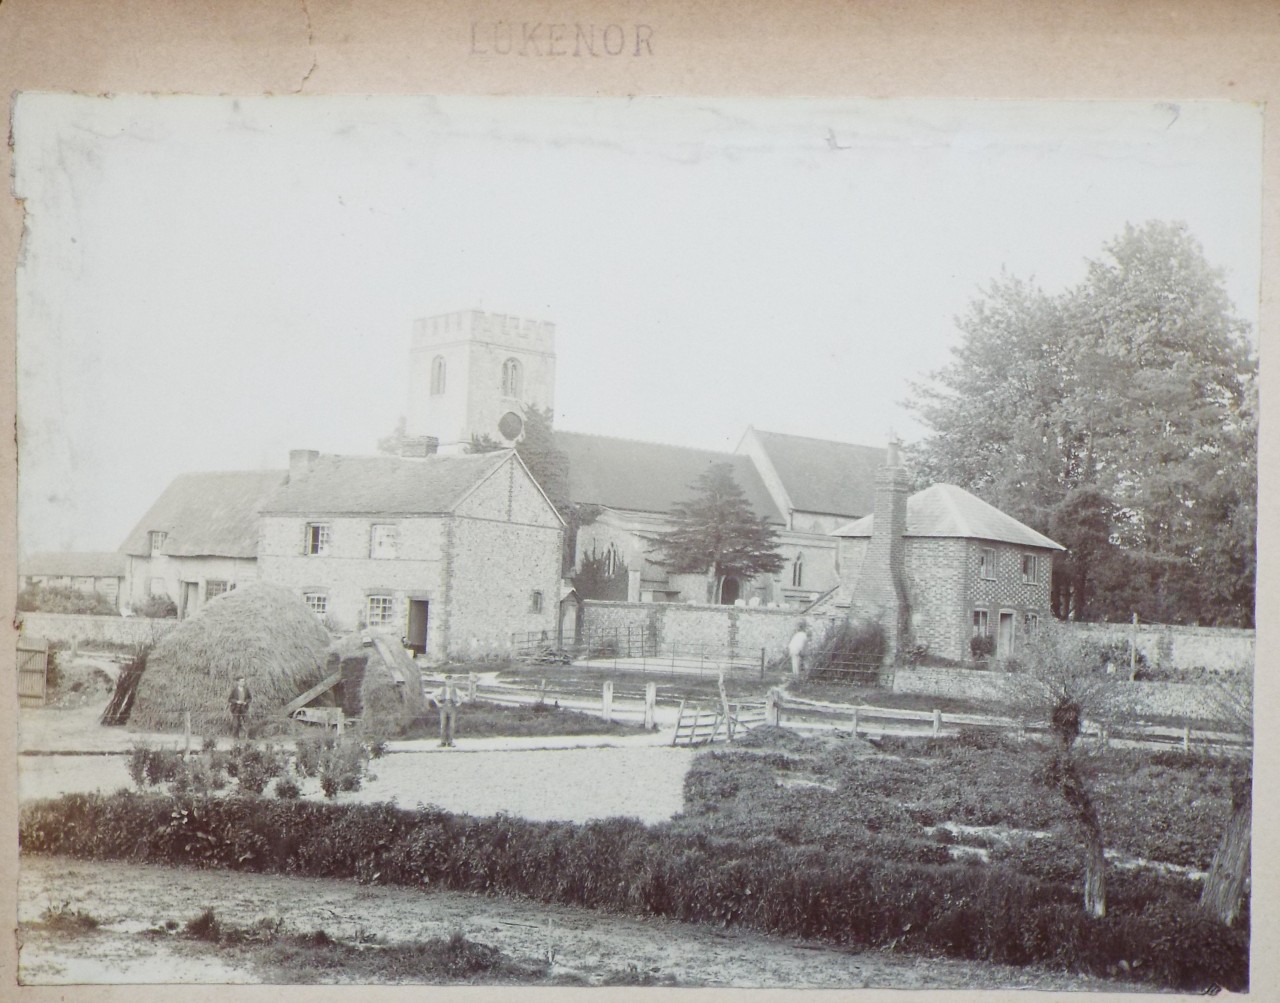 Photograph - Church Lane, Lukenor